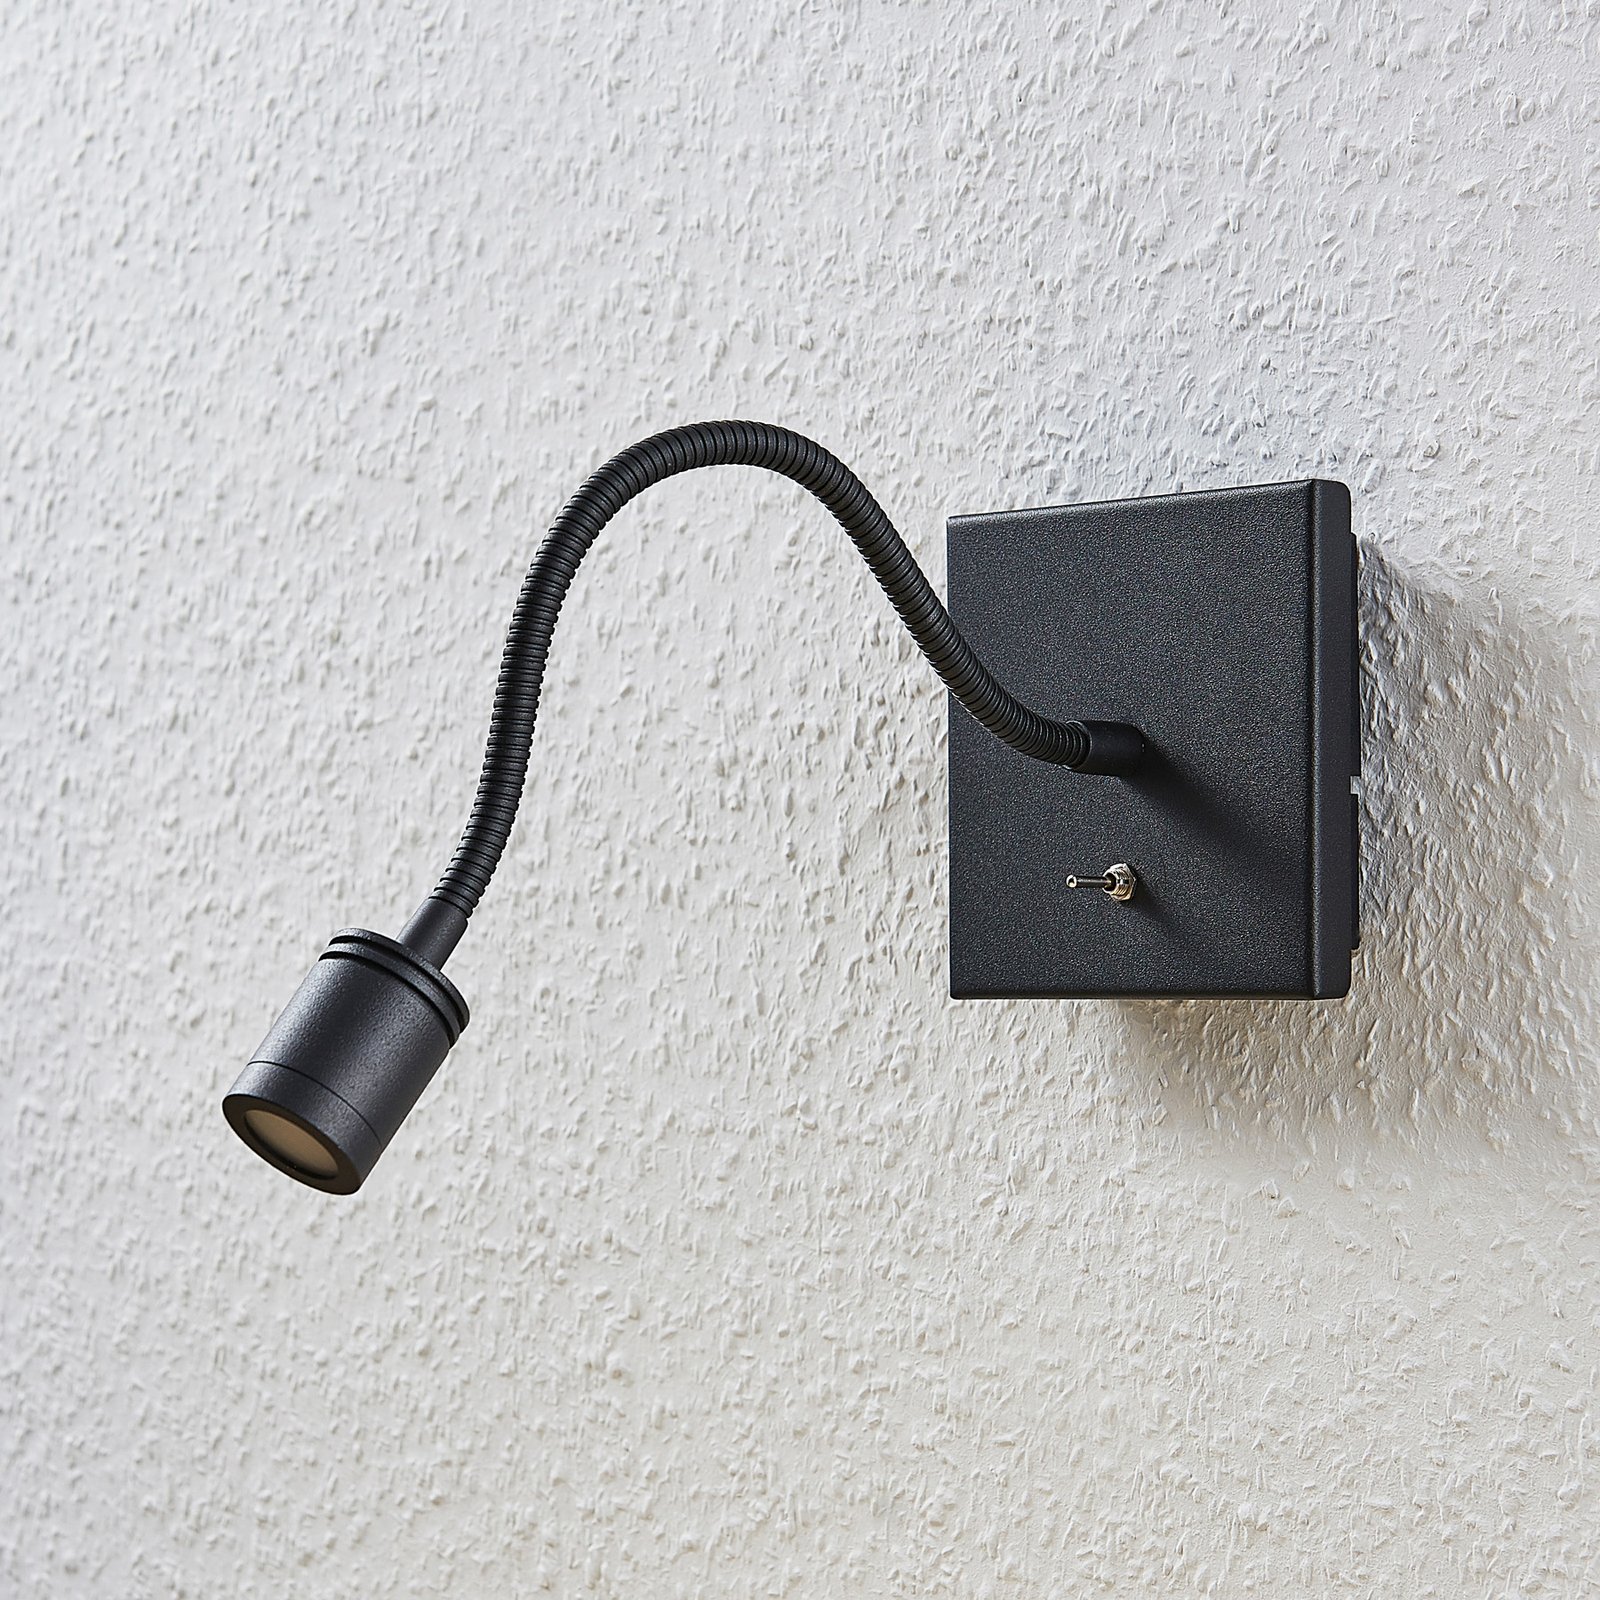 Mayar LED fali lámpa hajlékony karral, fekete, 2 darabos szett